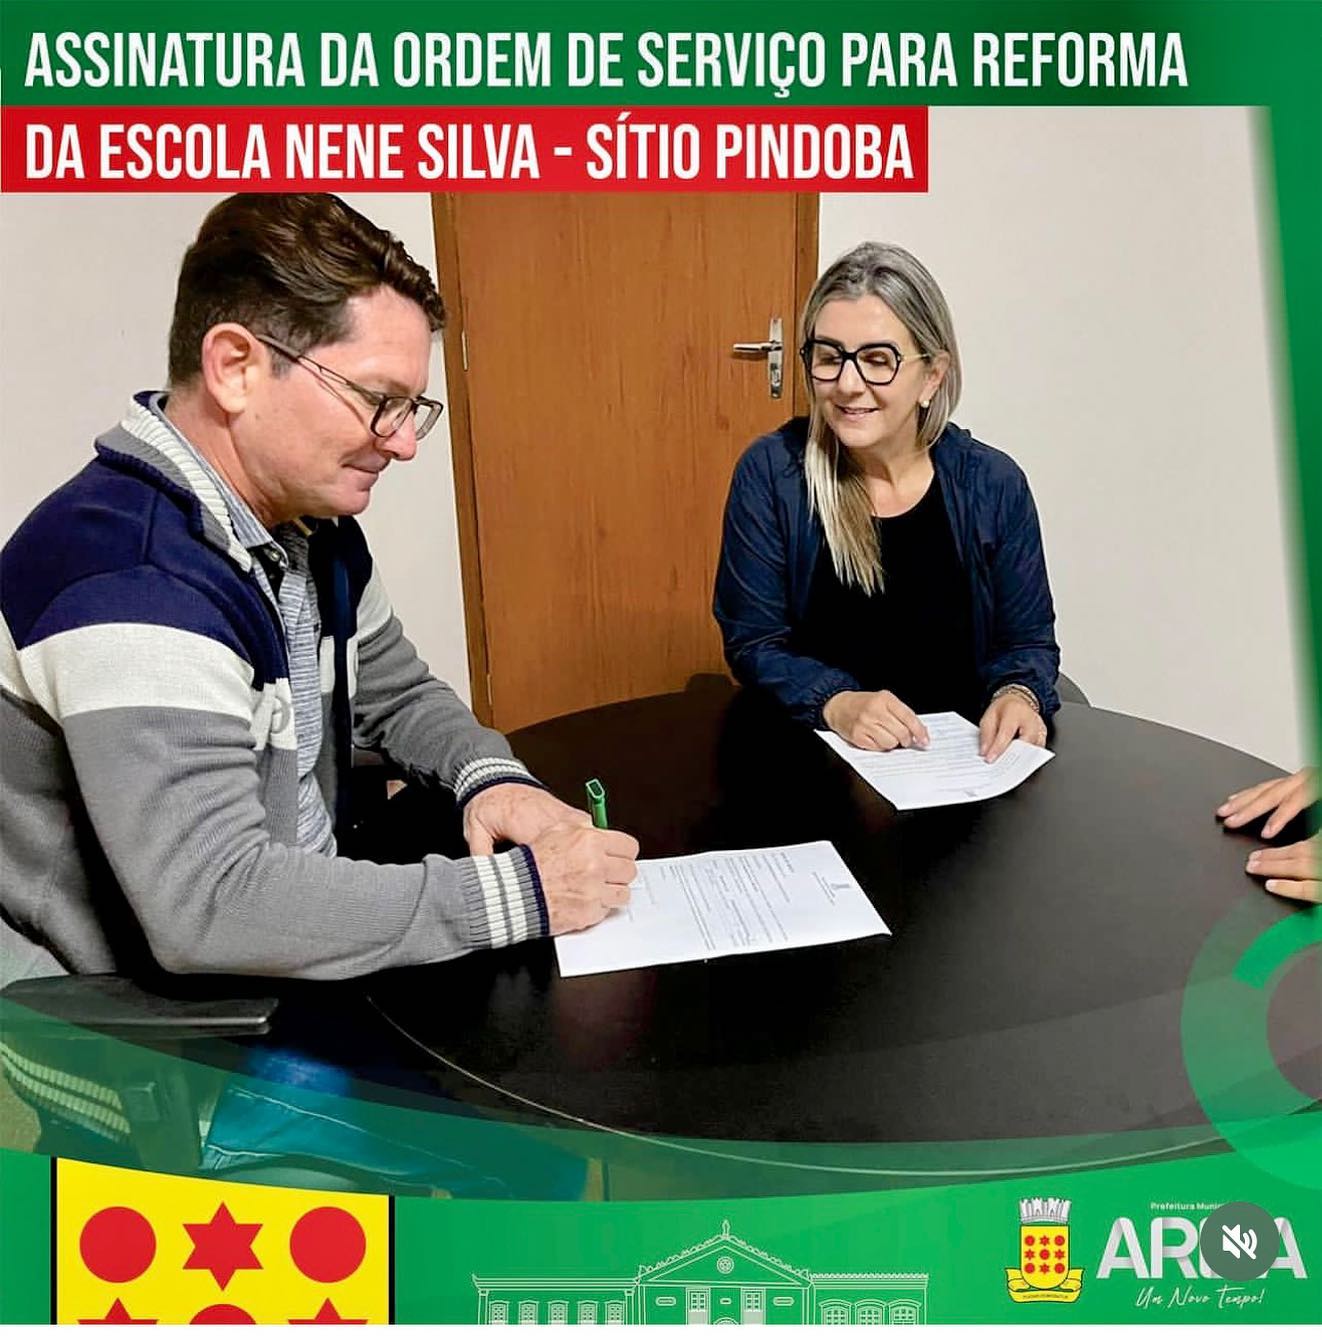 Prefeita de Areia assina Ordem de Serviço para reforma e ampliação da Escola Neném Silva no sítio Pindoba